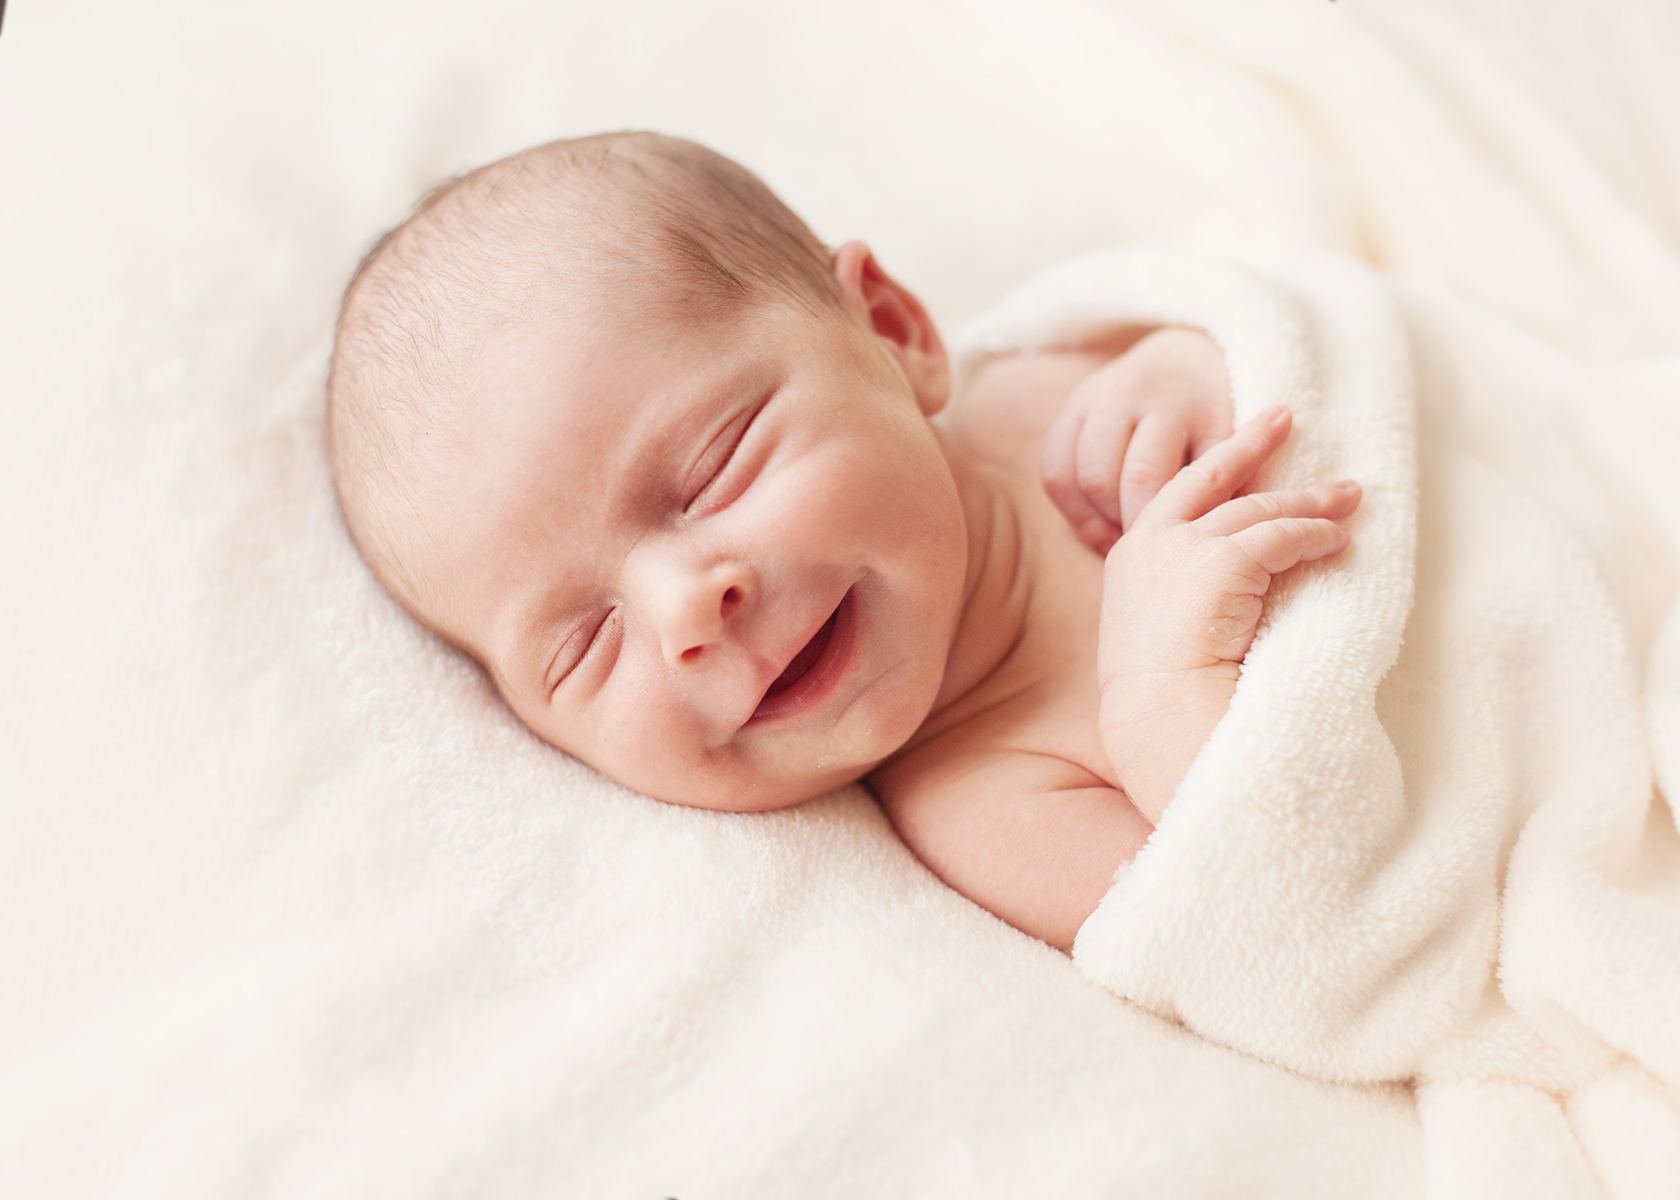 Новорожденный ребенок. Неворожденный ребёнок. Зебренок новорожденный. Младенец улыбается. Родился ребенок спящий